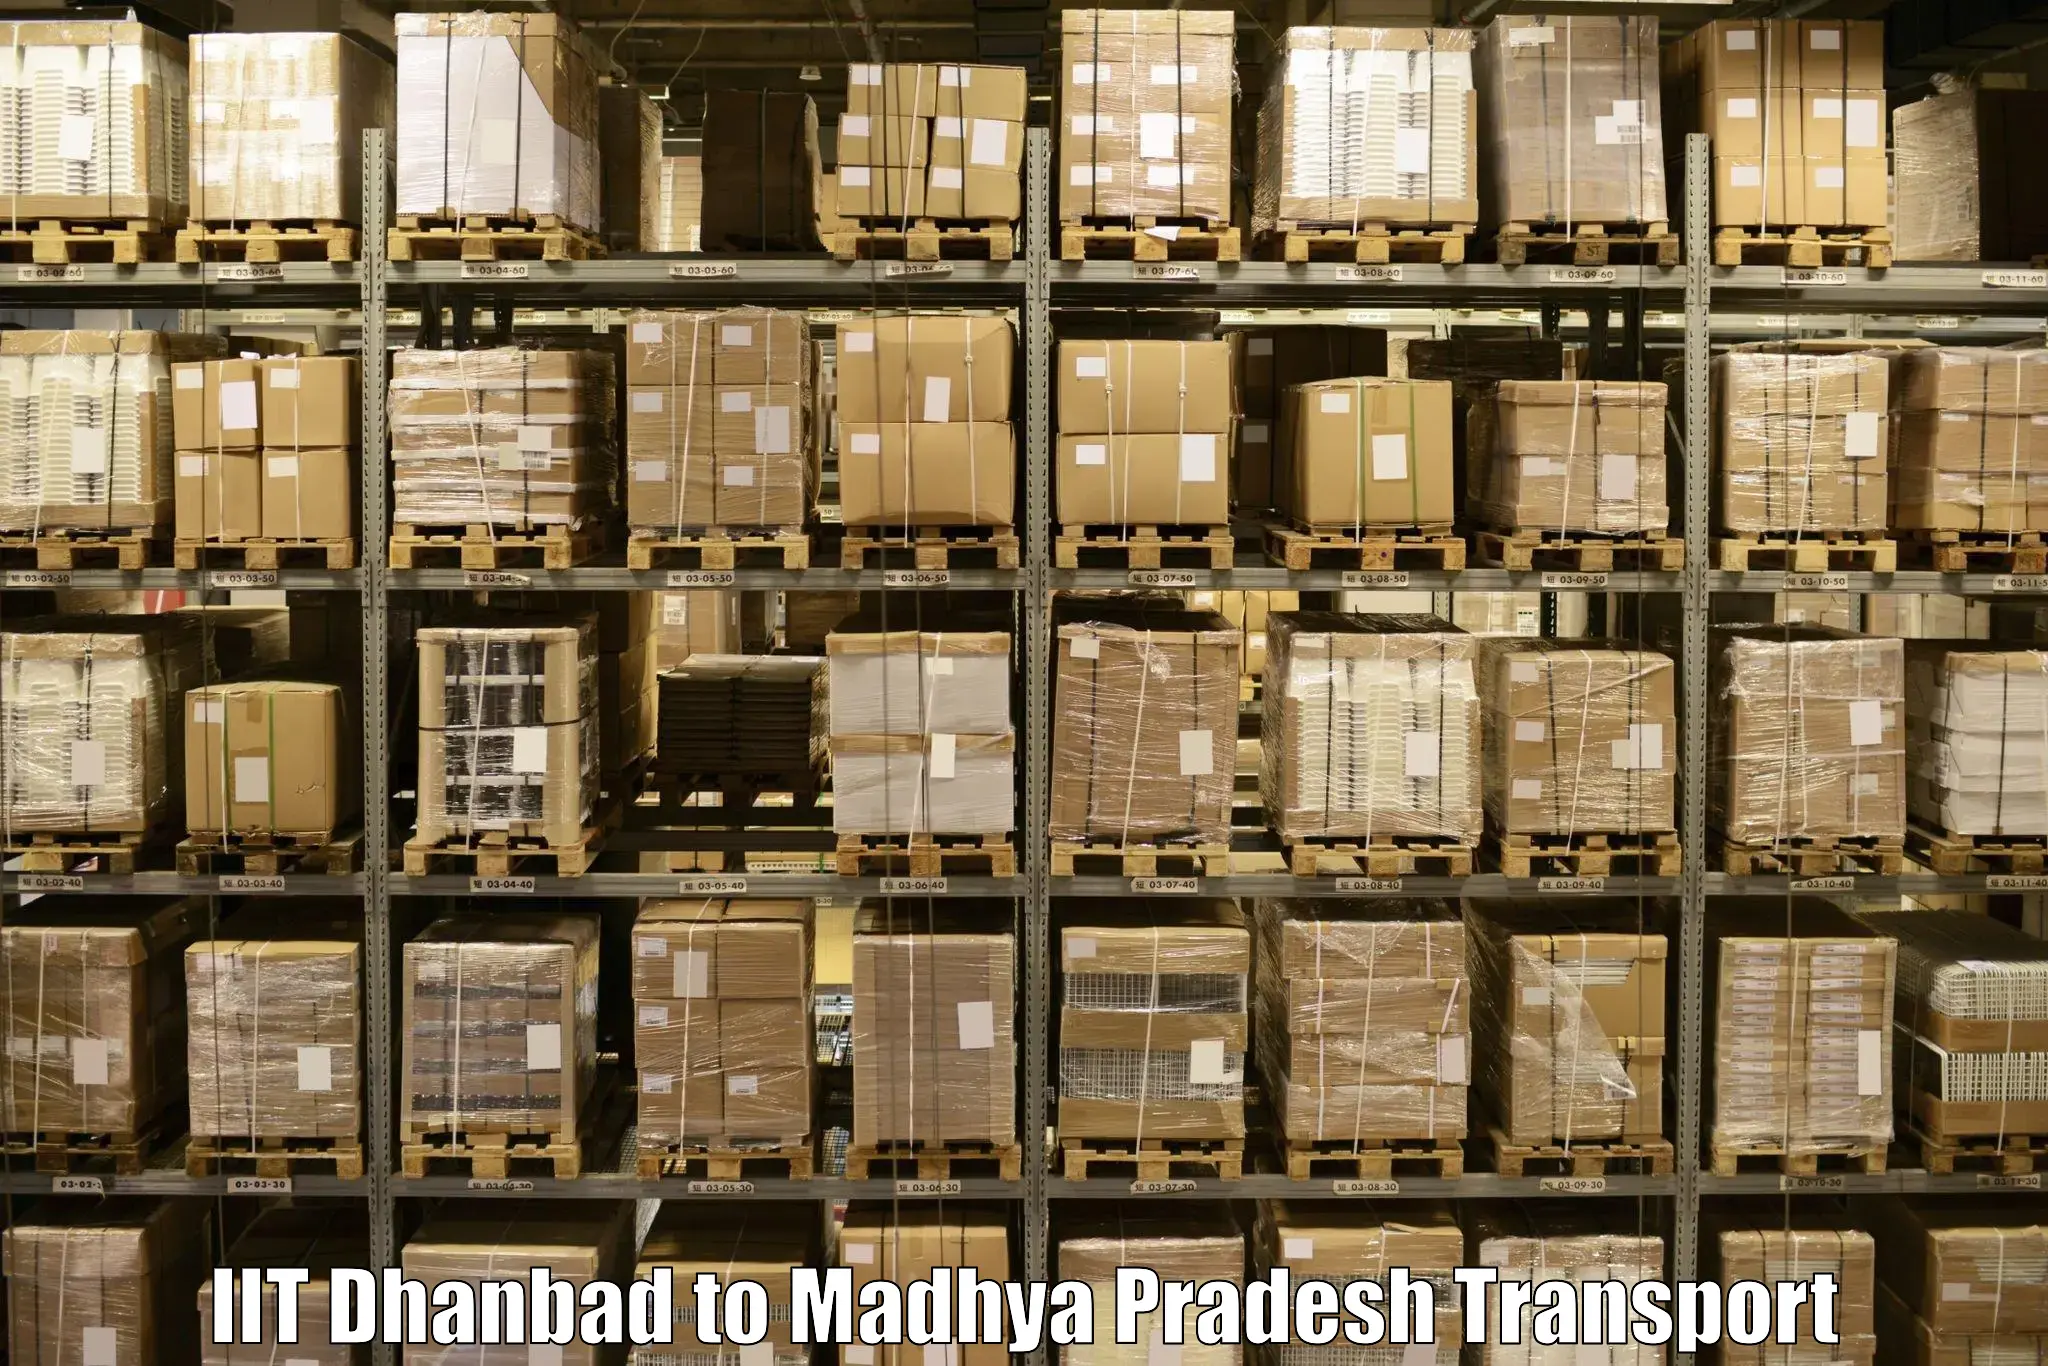 Online transport IIT Dhanbad to Ratlam